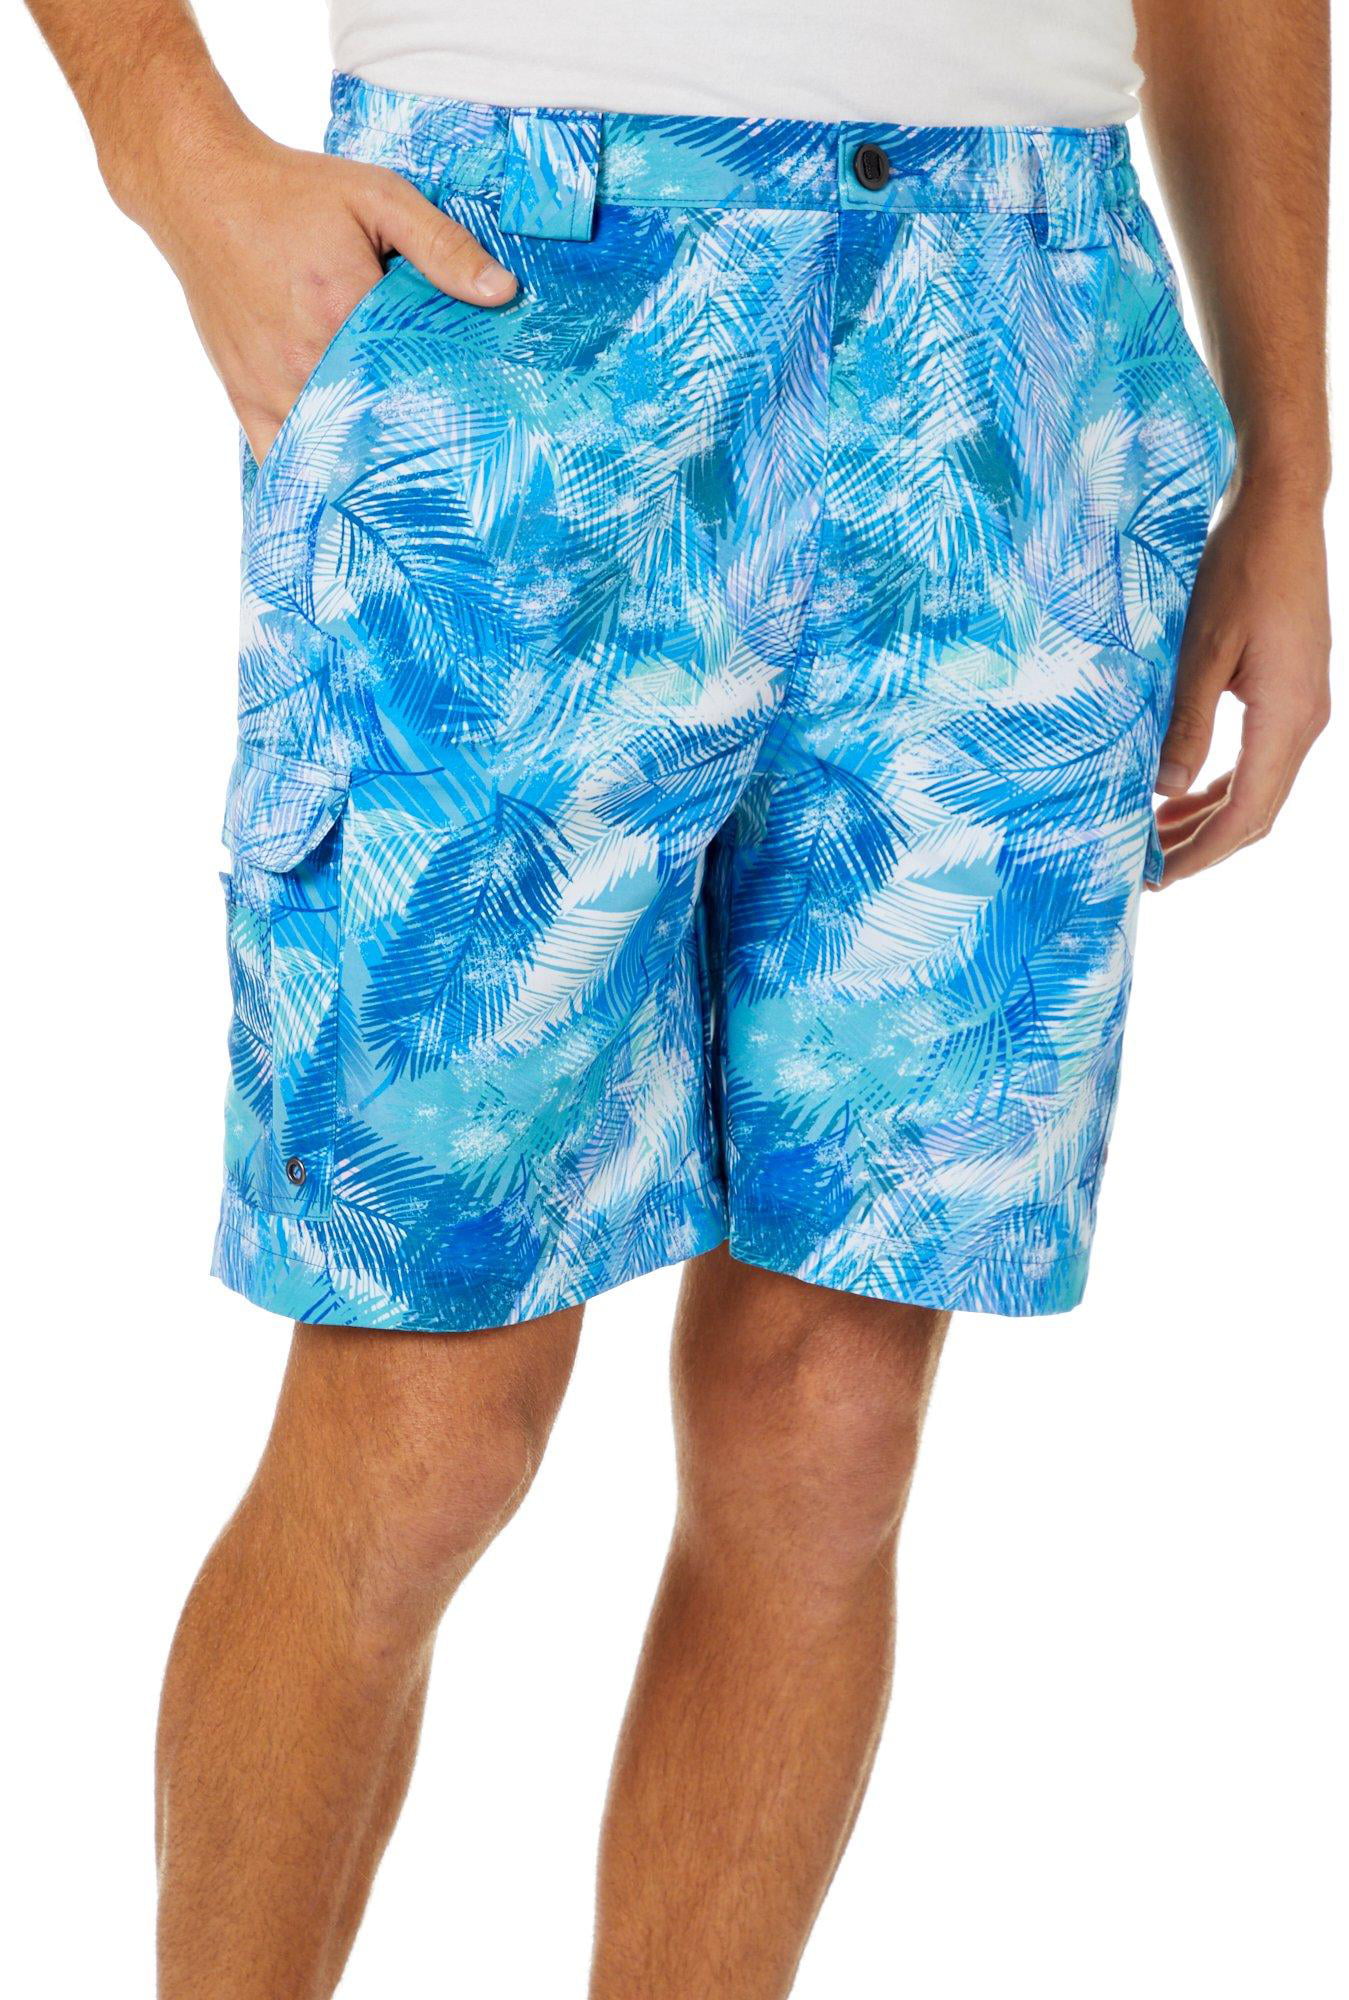 Reel Legends - Reel Legends Mens Bonefish Palm Reflection Shorts ...